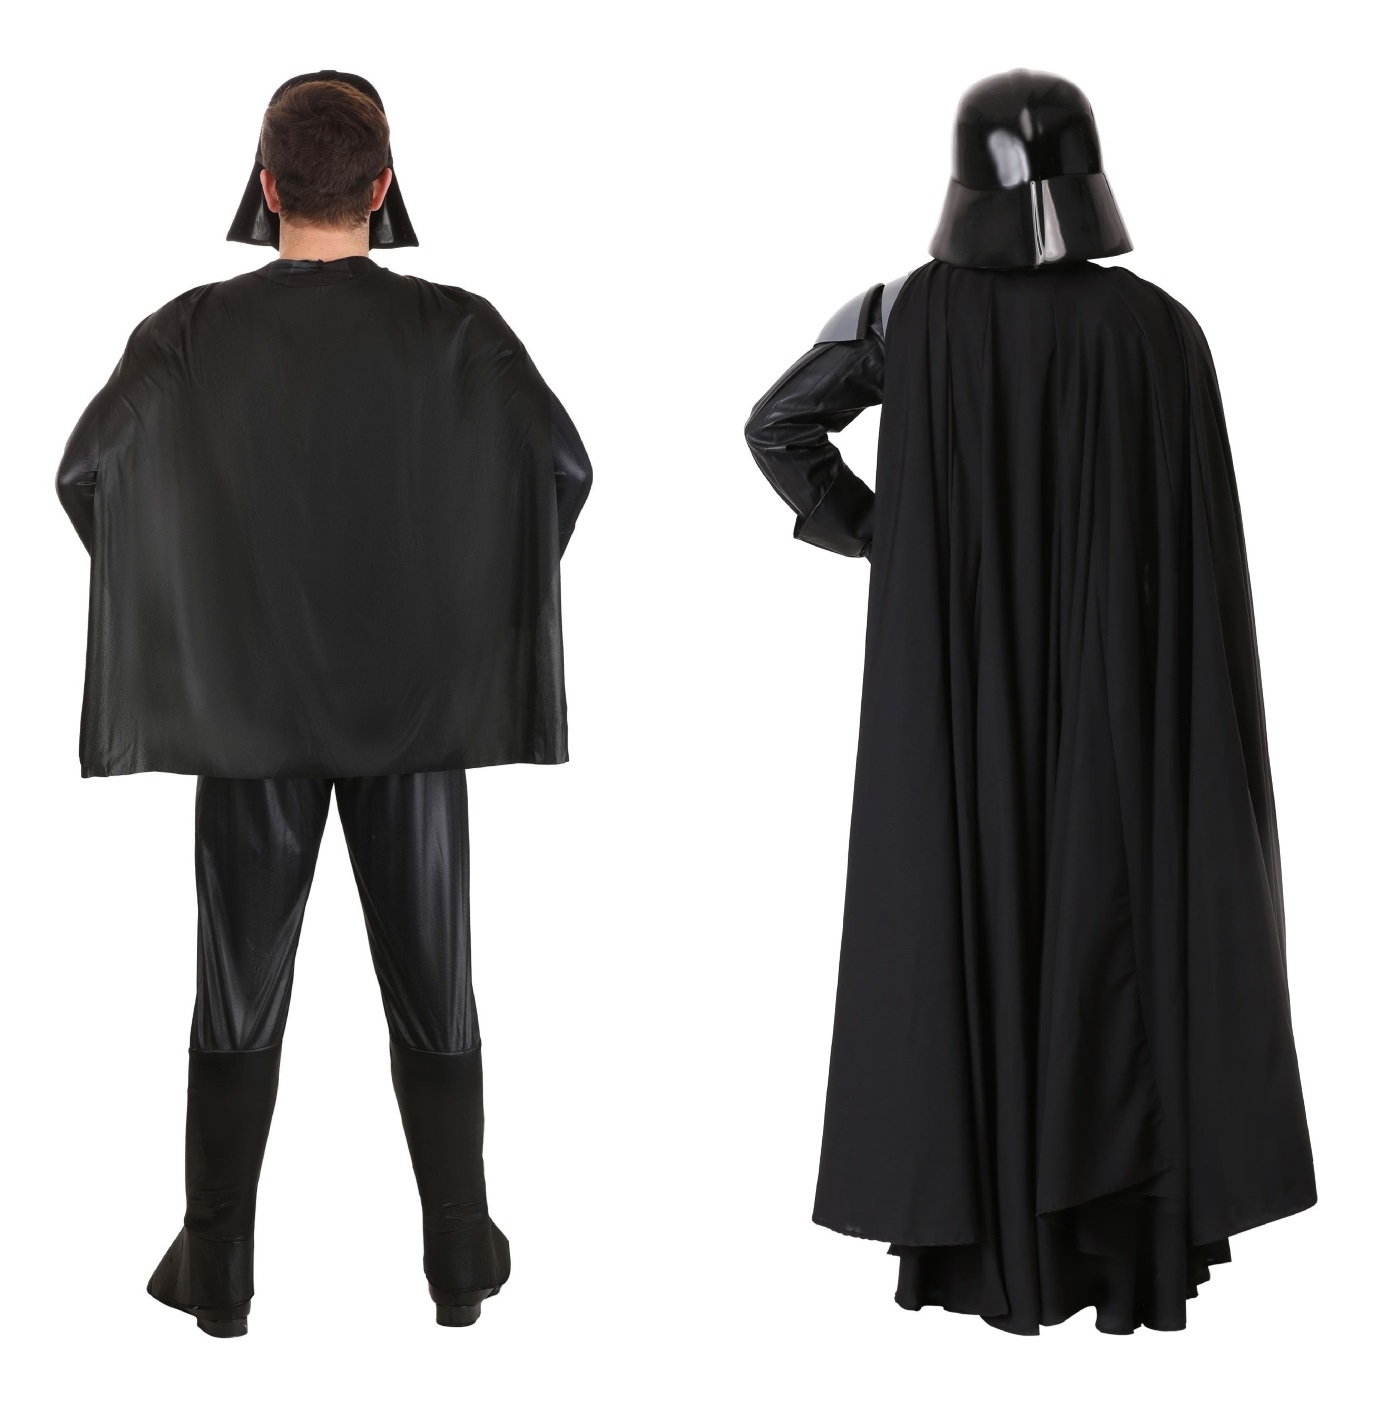 Darth Vader Costume Comaprison